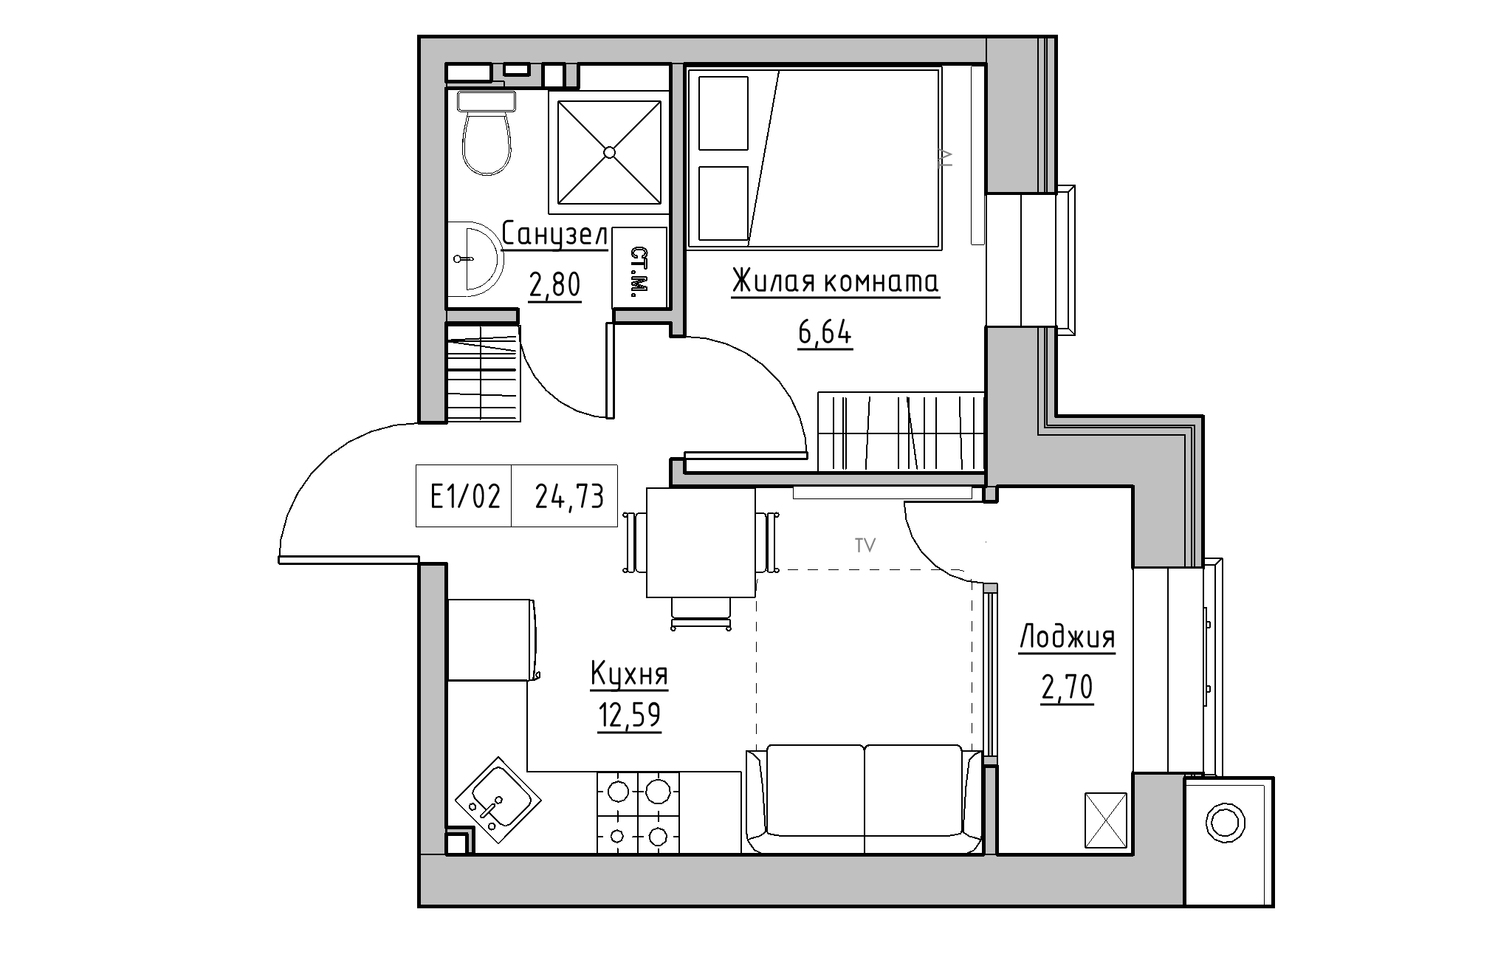 Планировка 1-к квартира площей 24.73м2, KS-013-05/0001.